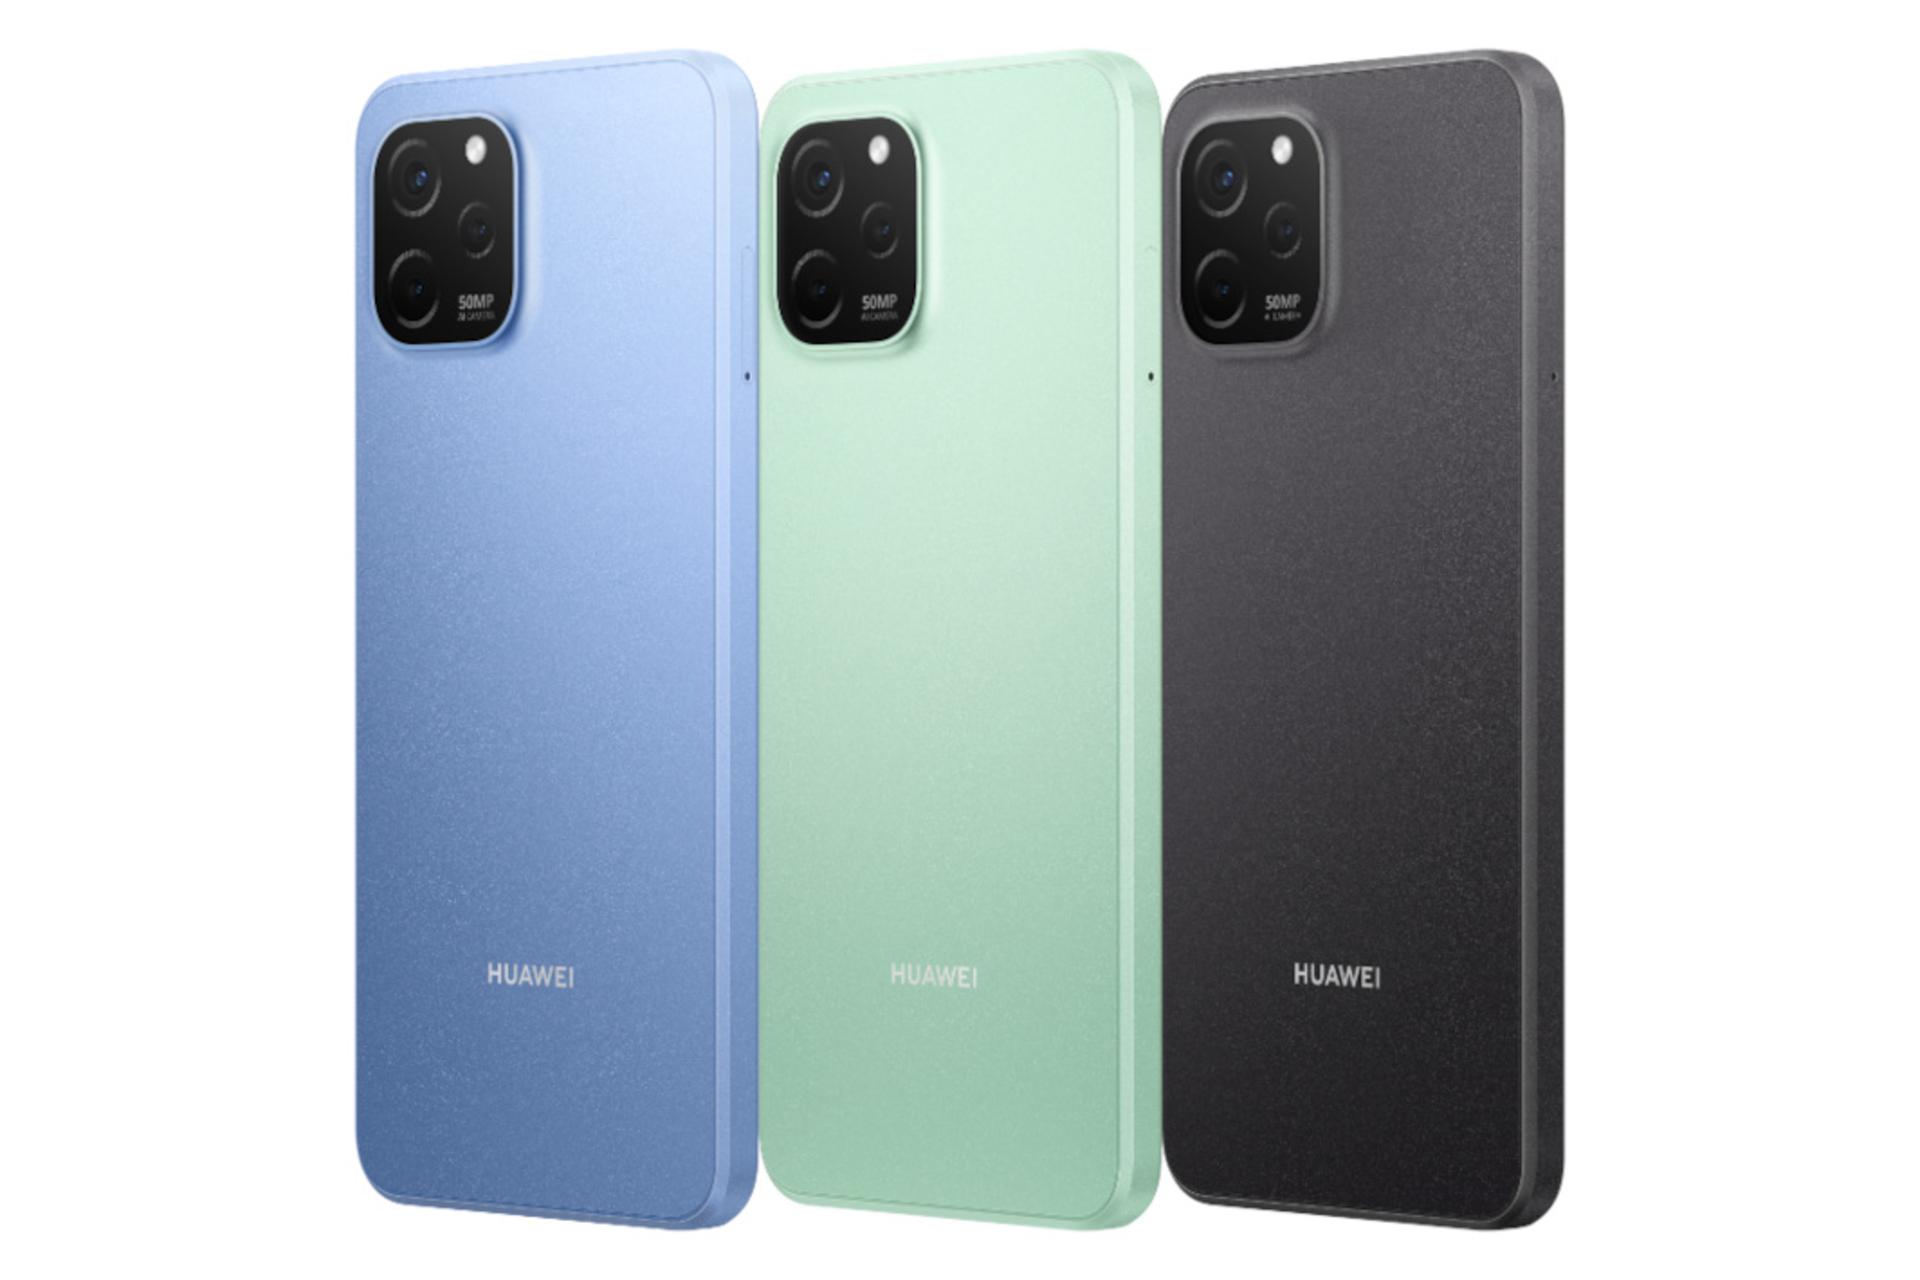 رنگ های مختلف گوشی موبایل اینجوی 50z هواوی / Huawei Enjoy 50z